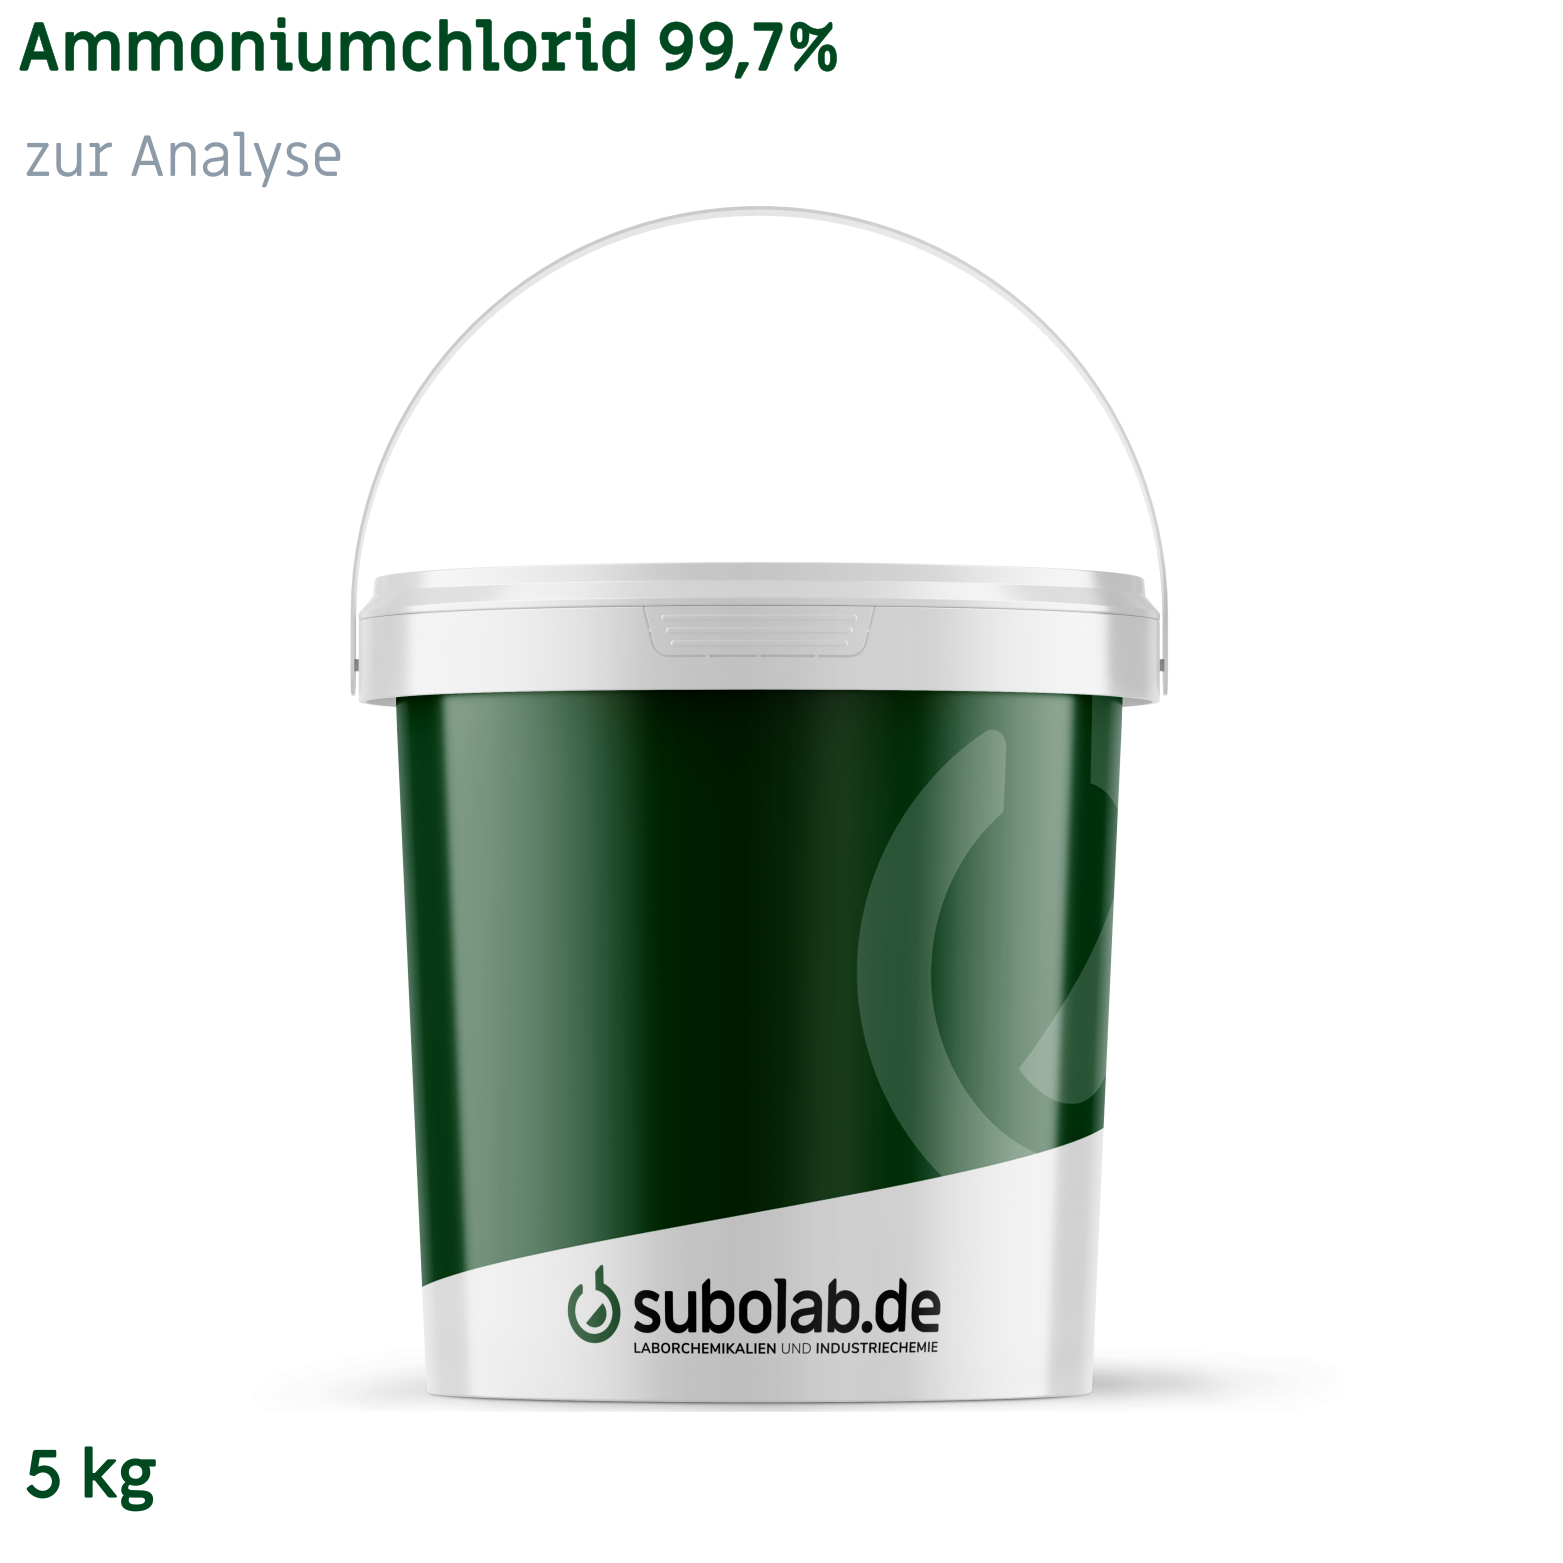 Bild von Ammoniumchlorid 99,7% zur Analyse (5 kg)